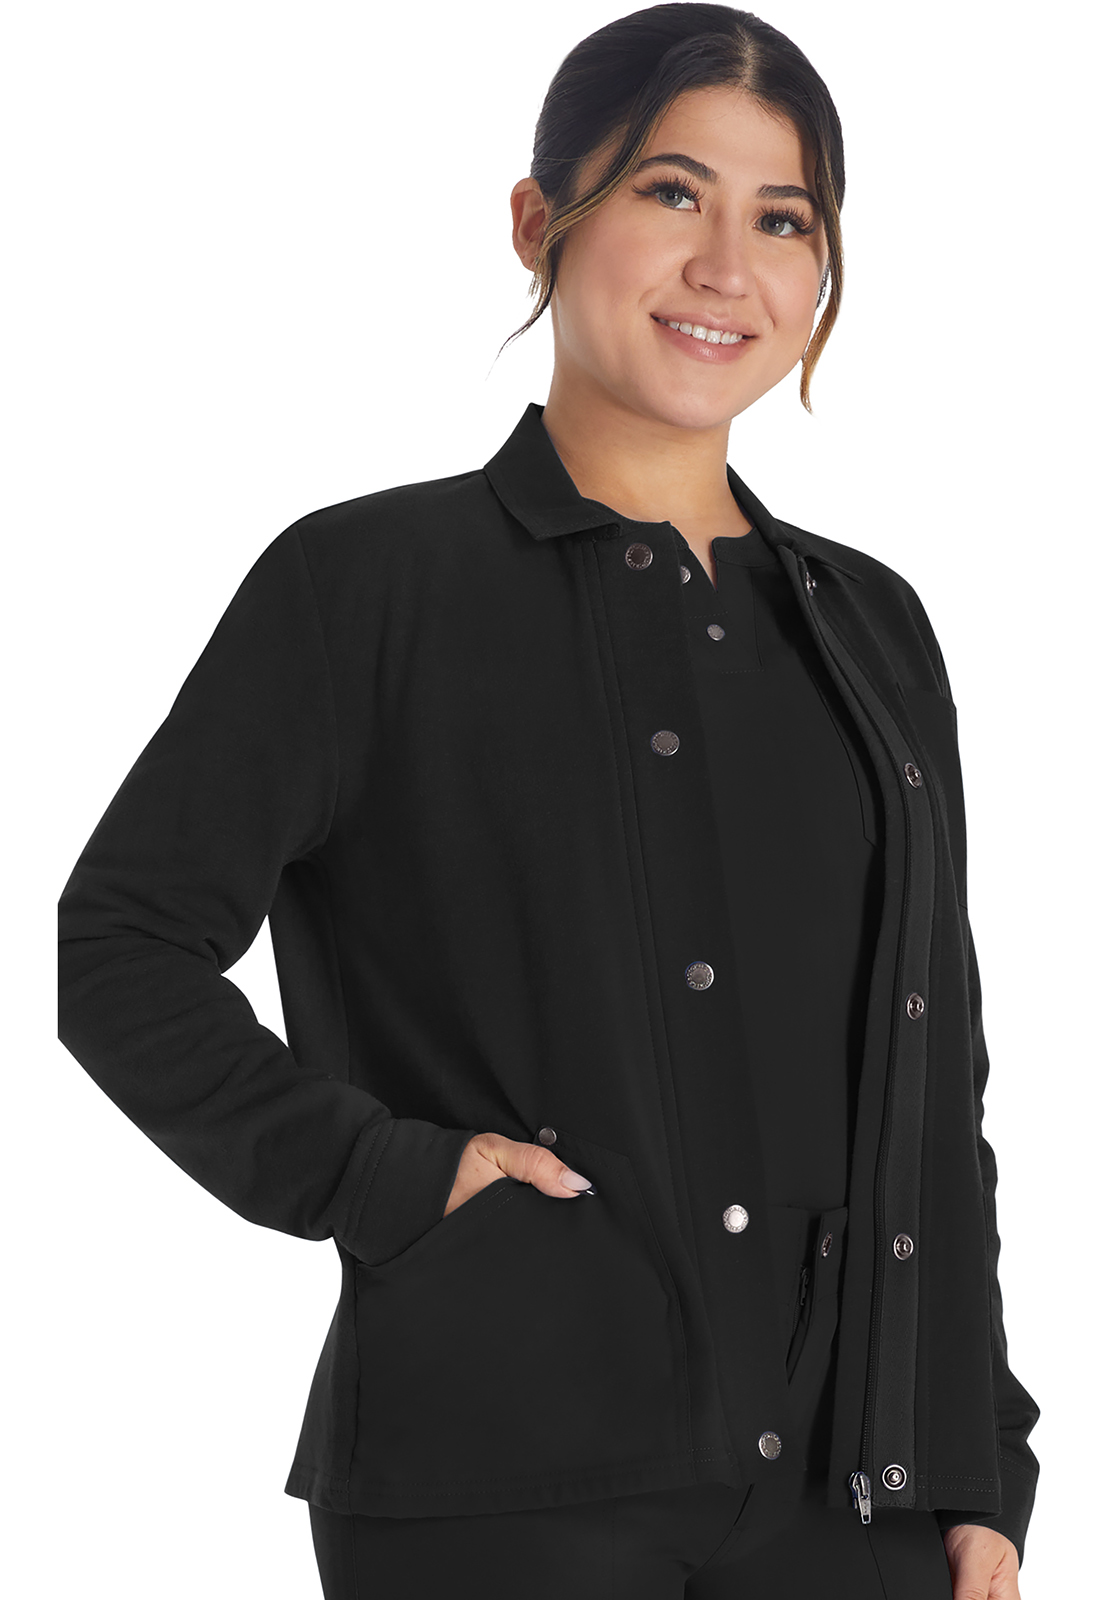 Buy Zip Front Fleece Jacket - Dickies Online at Best price - NC